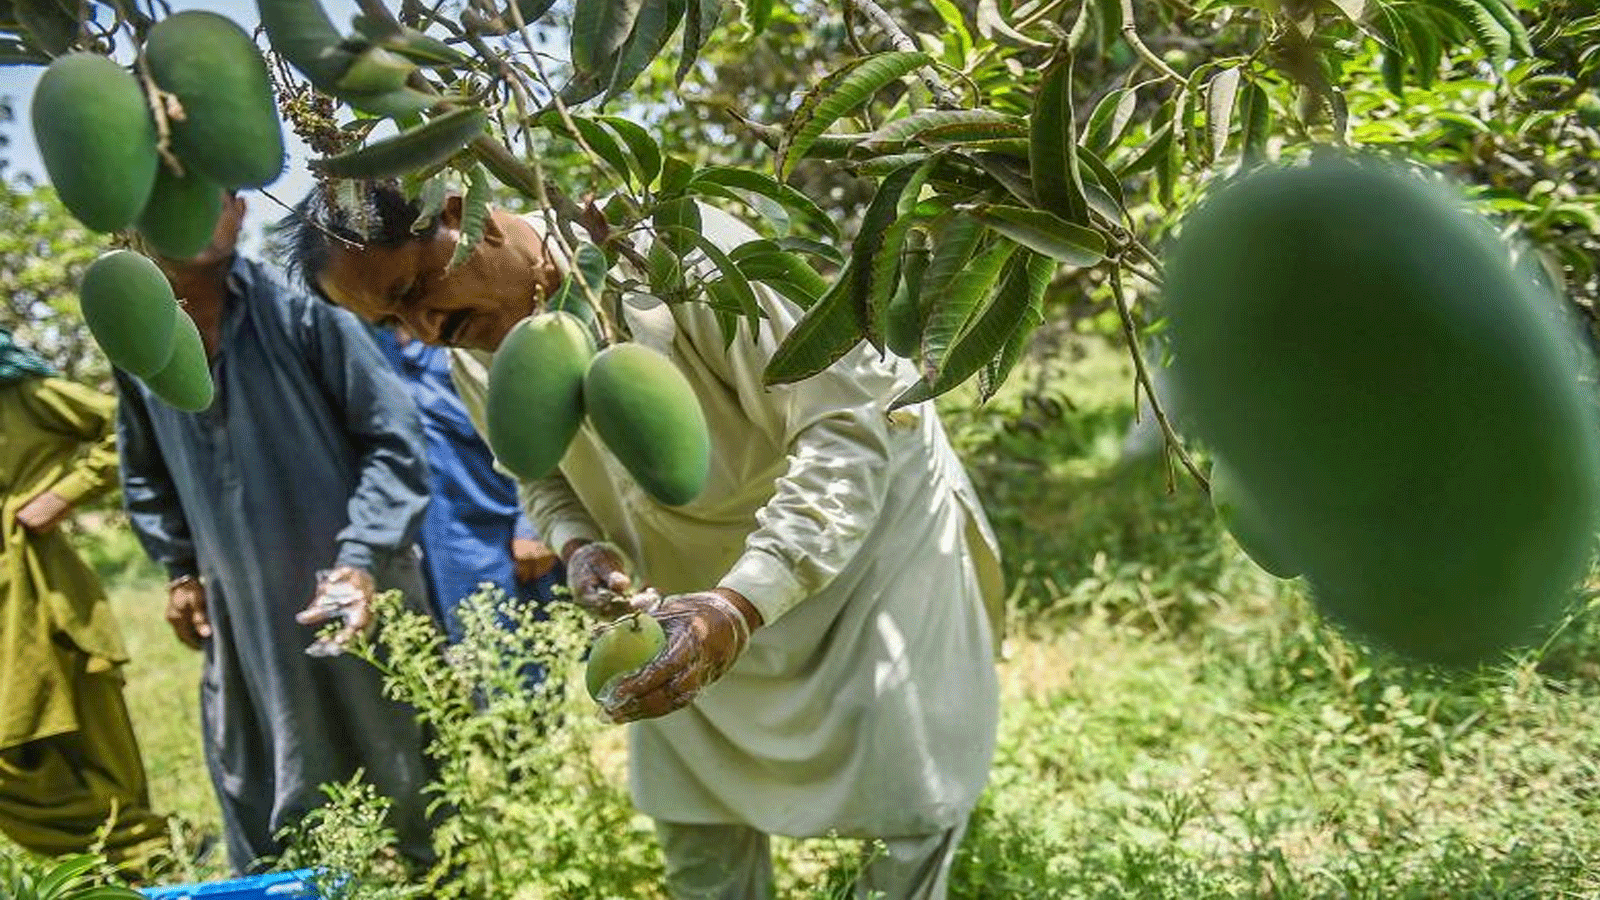 مزارع يقطف المانجو من شجرة في مزرعة خارج مدينة ميربور خاس في مقاطعة السند جنوب باكستان